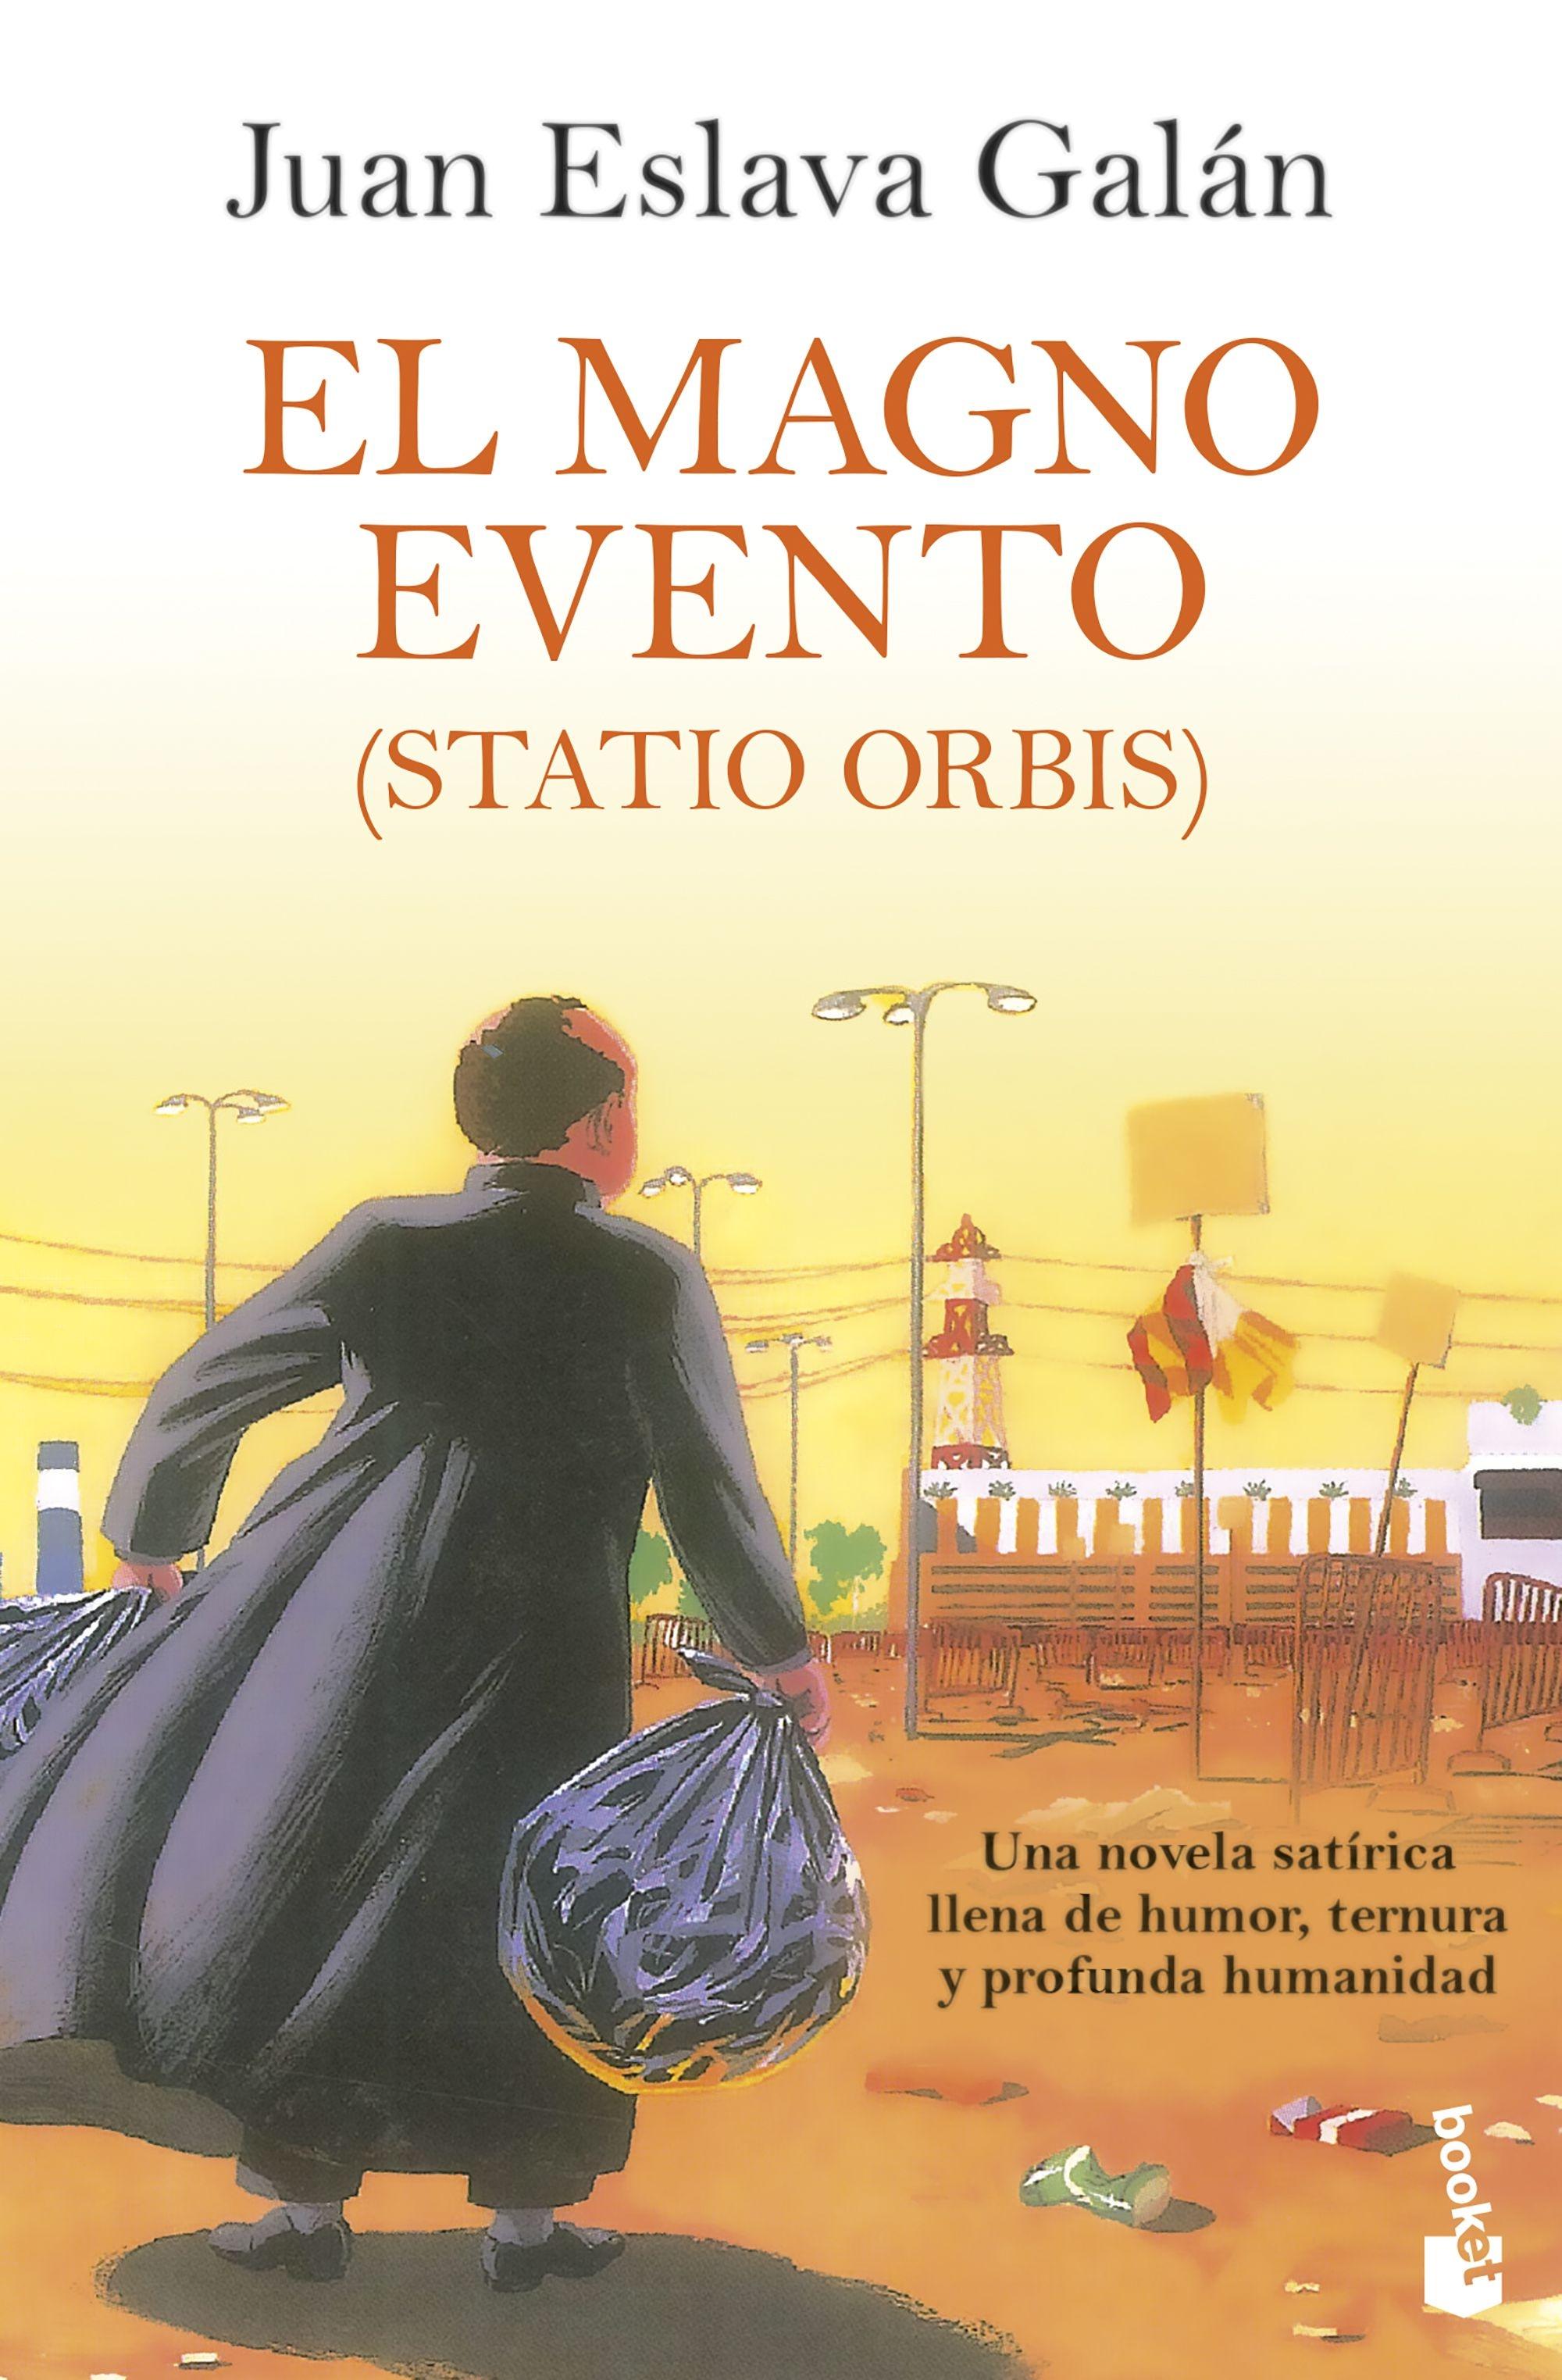 Magno Evento, El  "(Statio Orbis)"